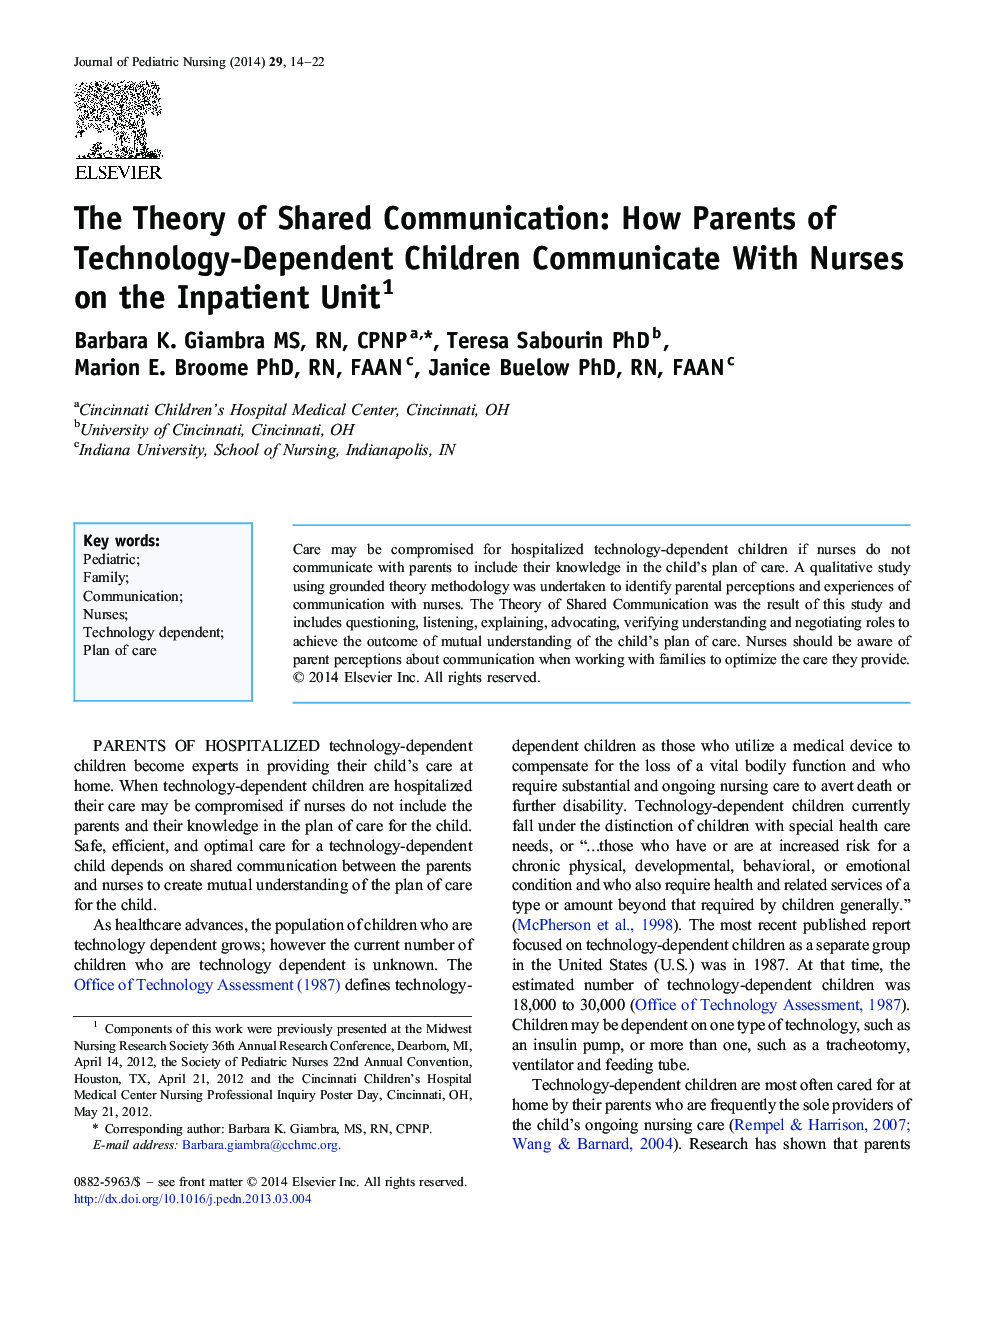 نظریه ارتباطات مشترک: چگونه والدین کودکان وابسته به فناوری با پرستاران بخش بستری ارتباط برقرار می کنند